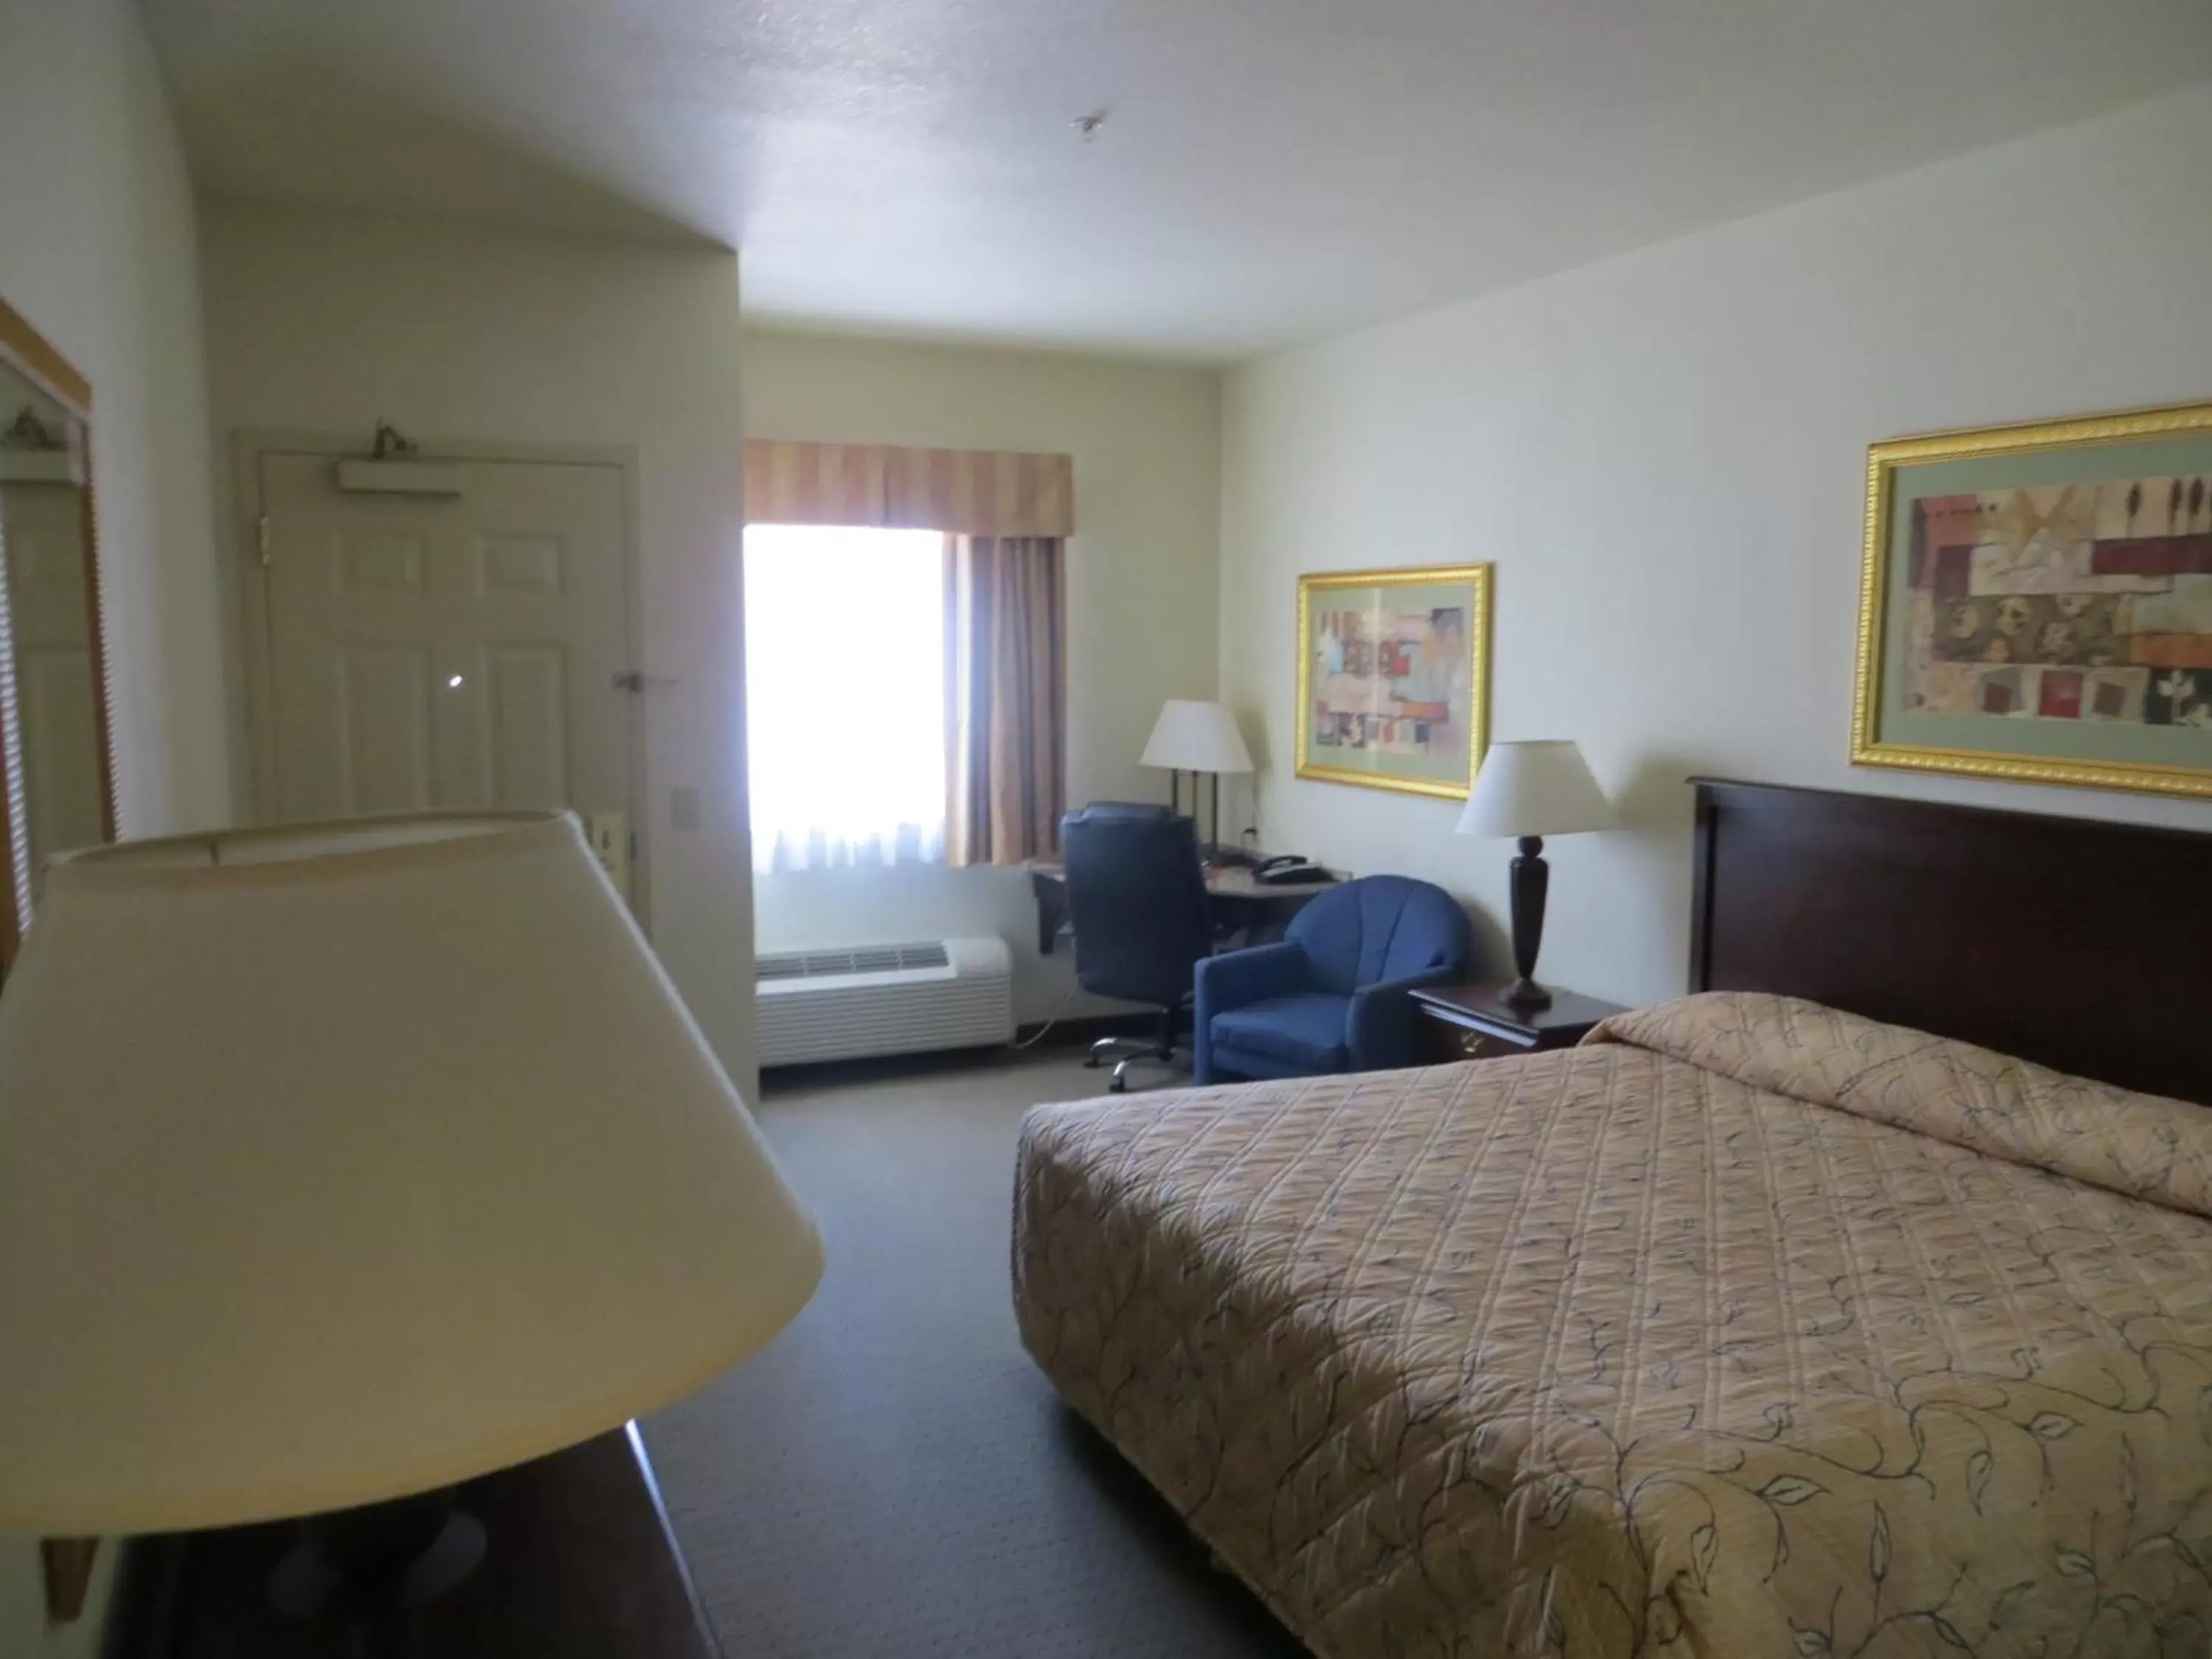 Bedroom in HomeTown Hotel